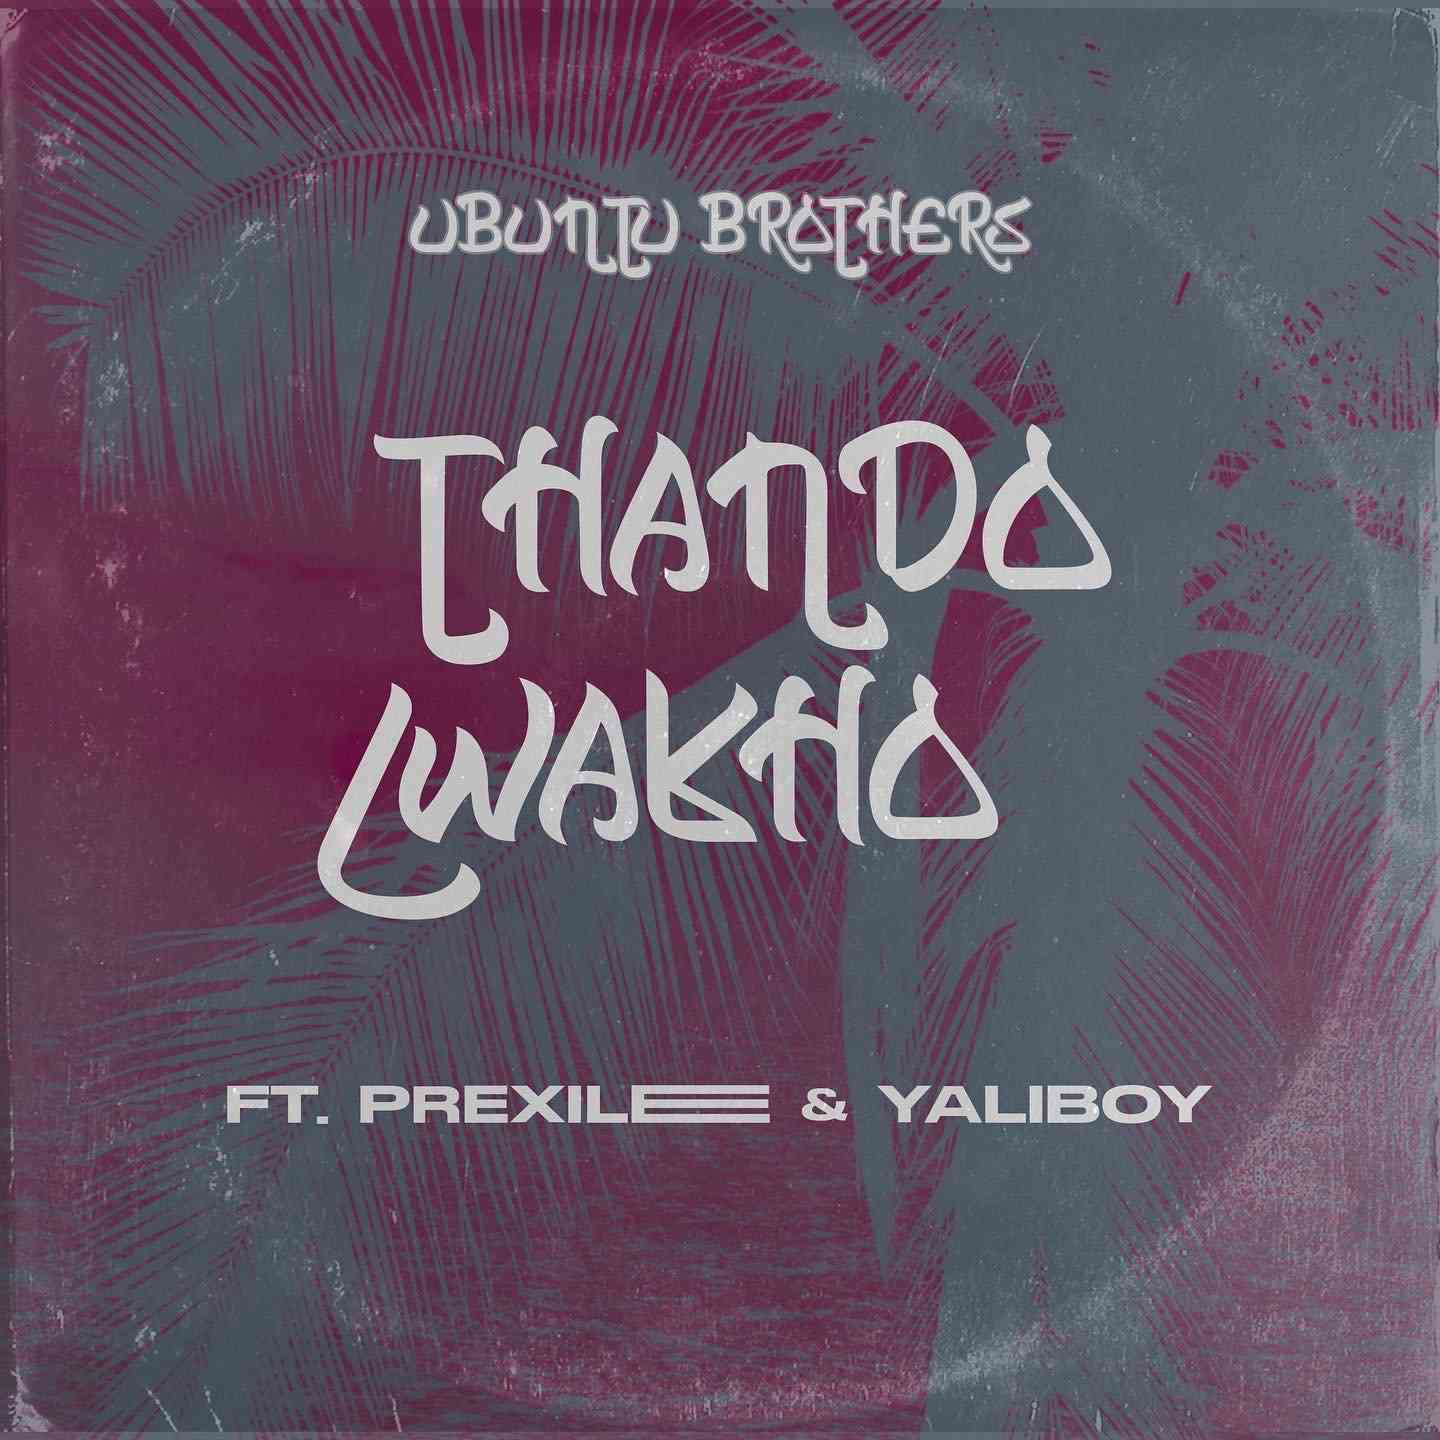 Ubuntu Brothers Thando Lwakho ft. Prixilee & Yaliboy